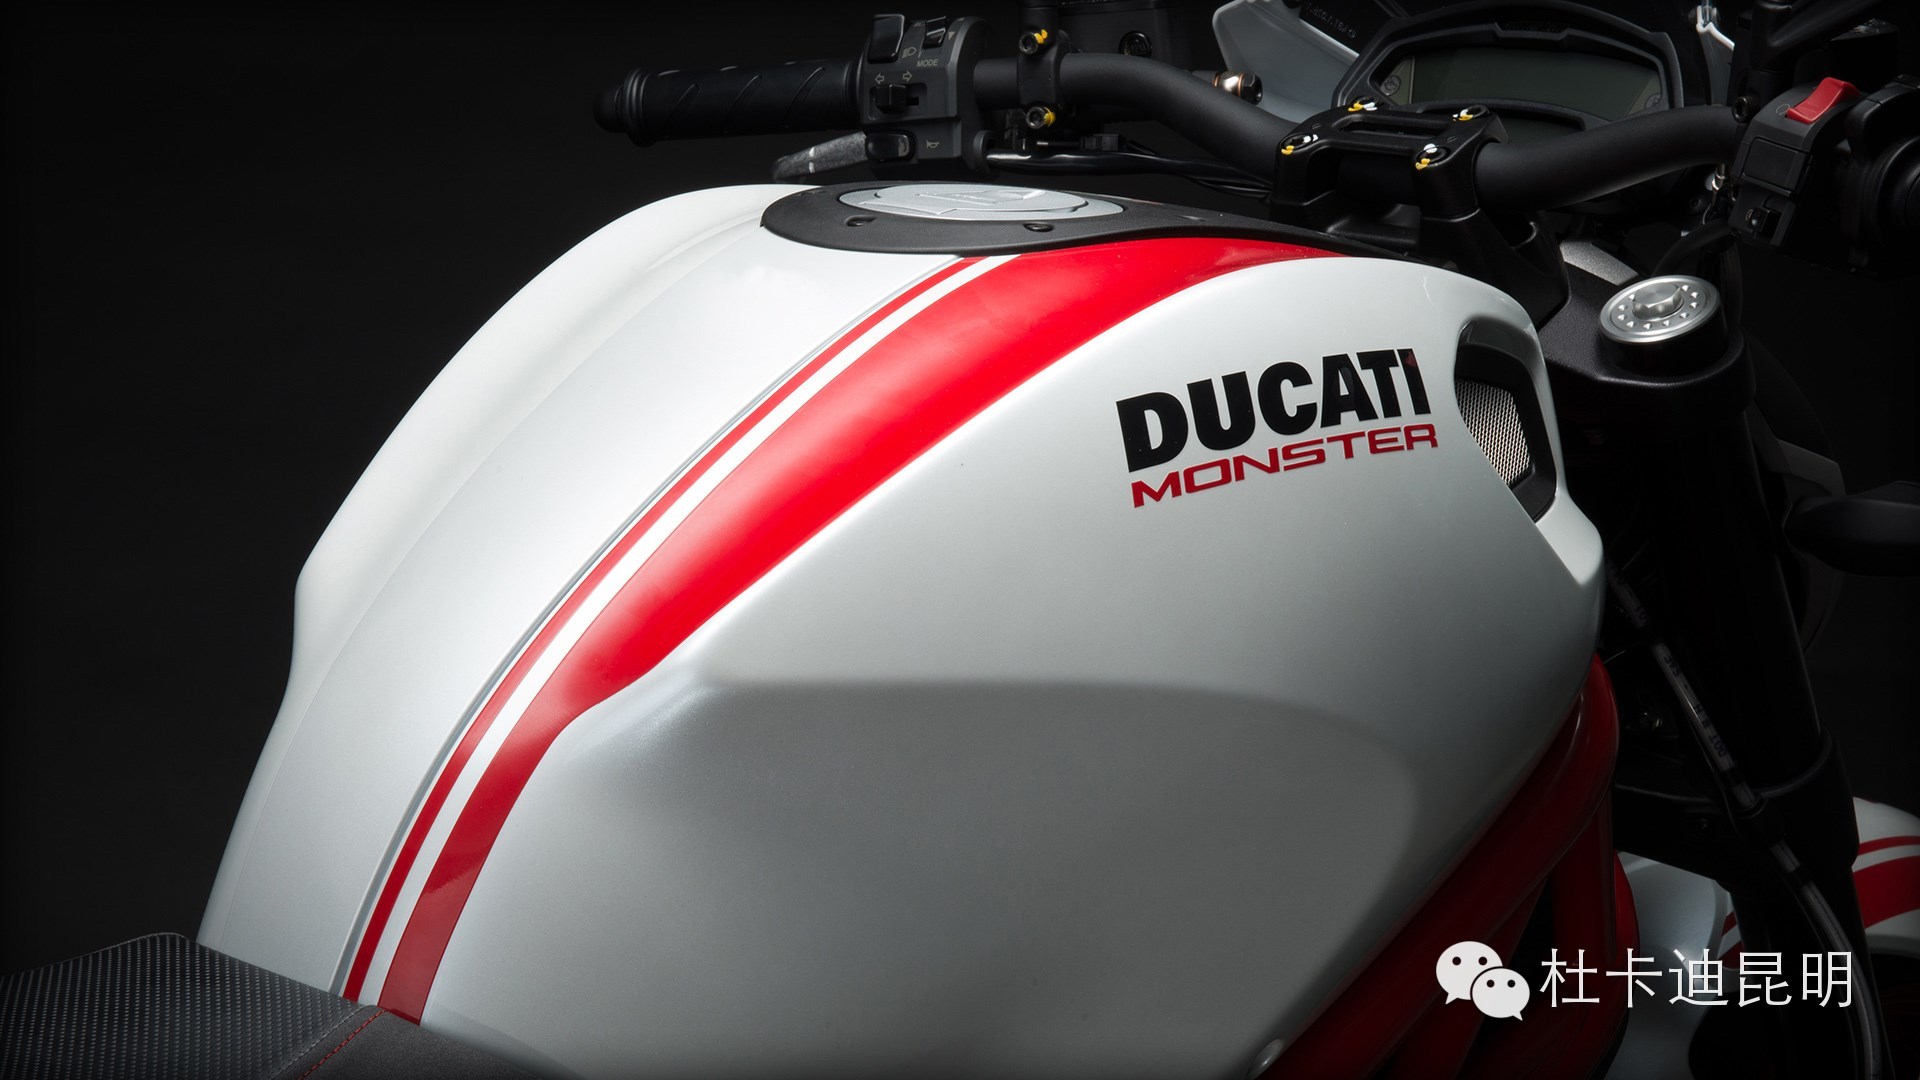 杜卡迪Monster 795摩托车 红条版昆明发布派对邀请，滇池探春之旅 即将开启！